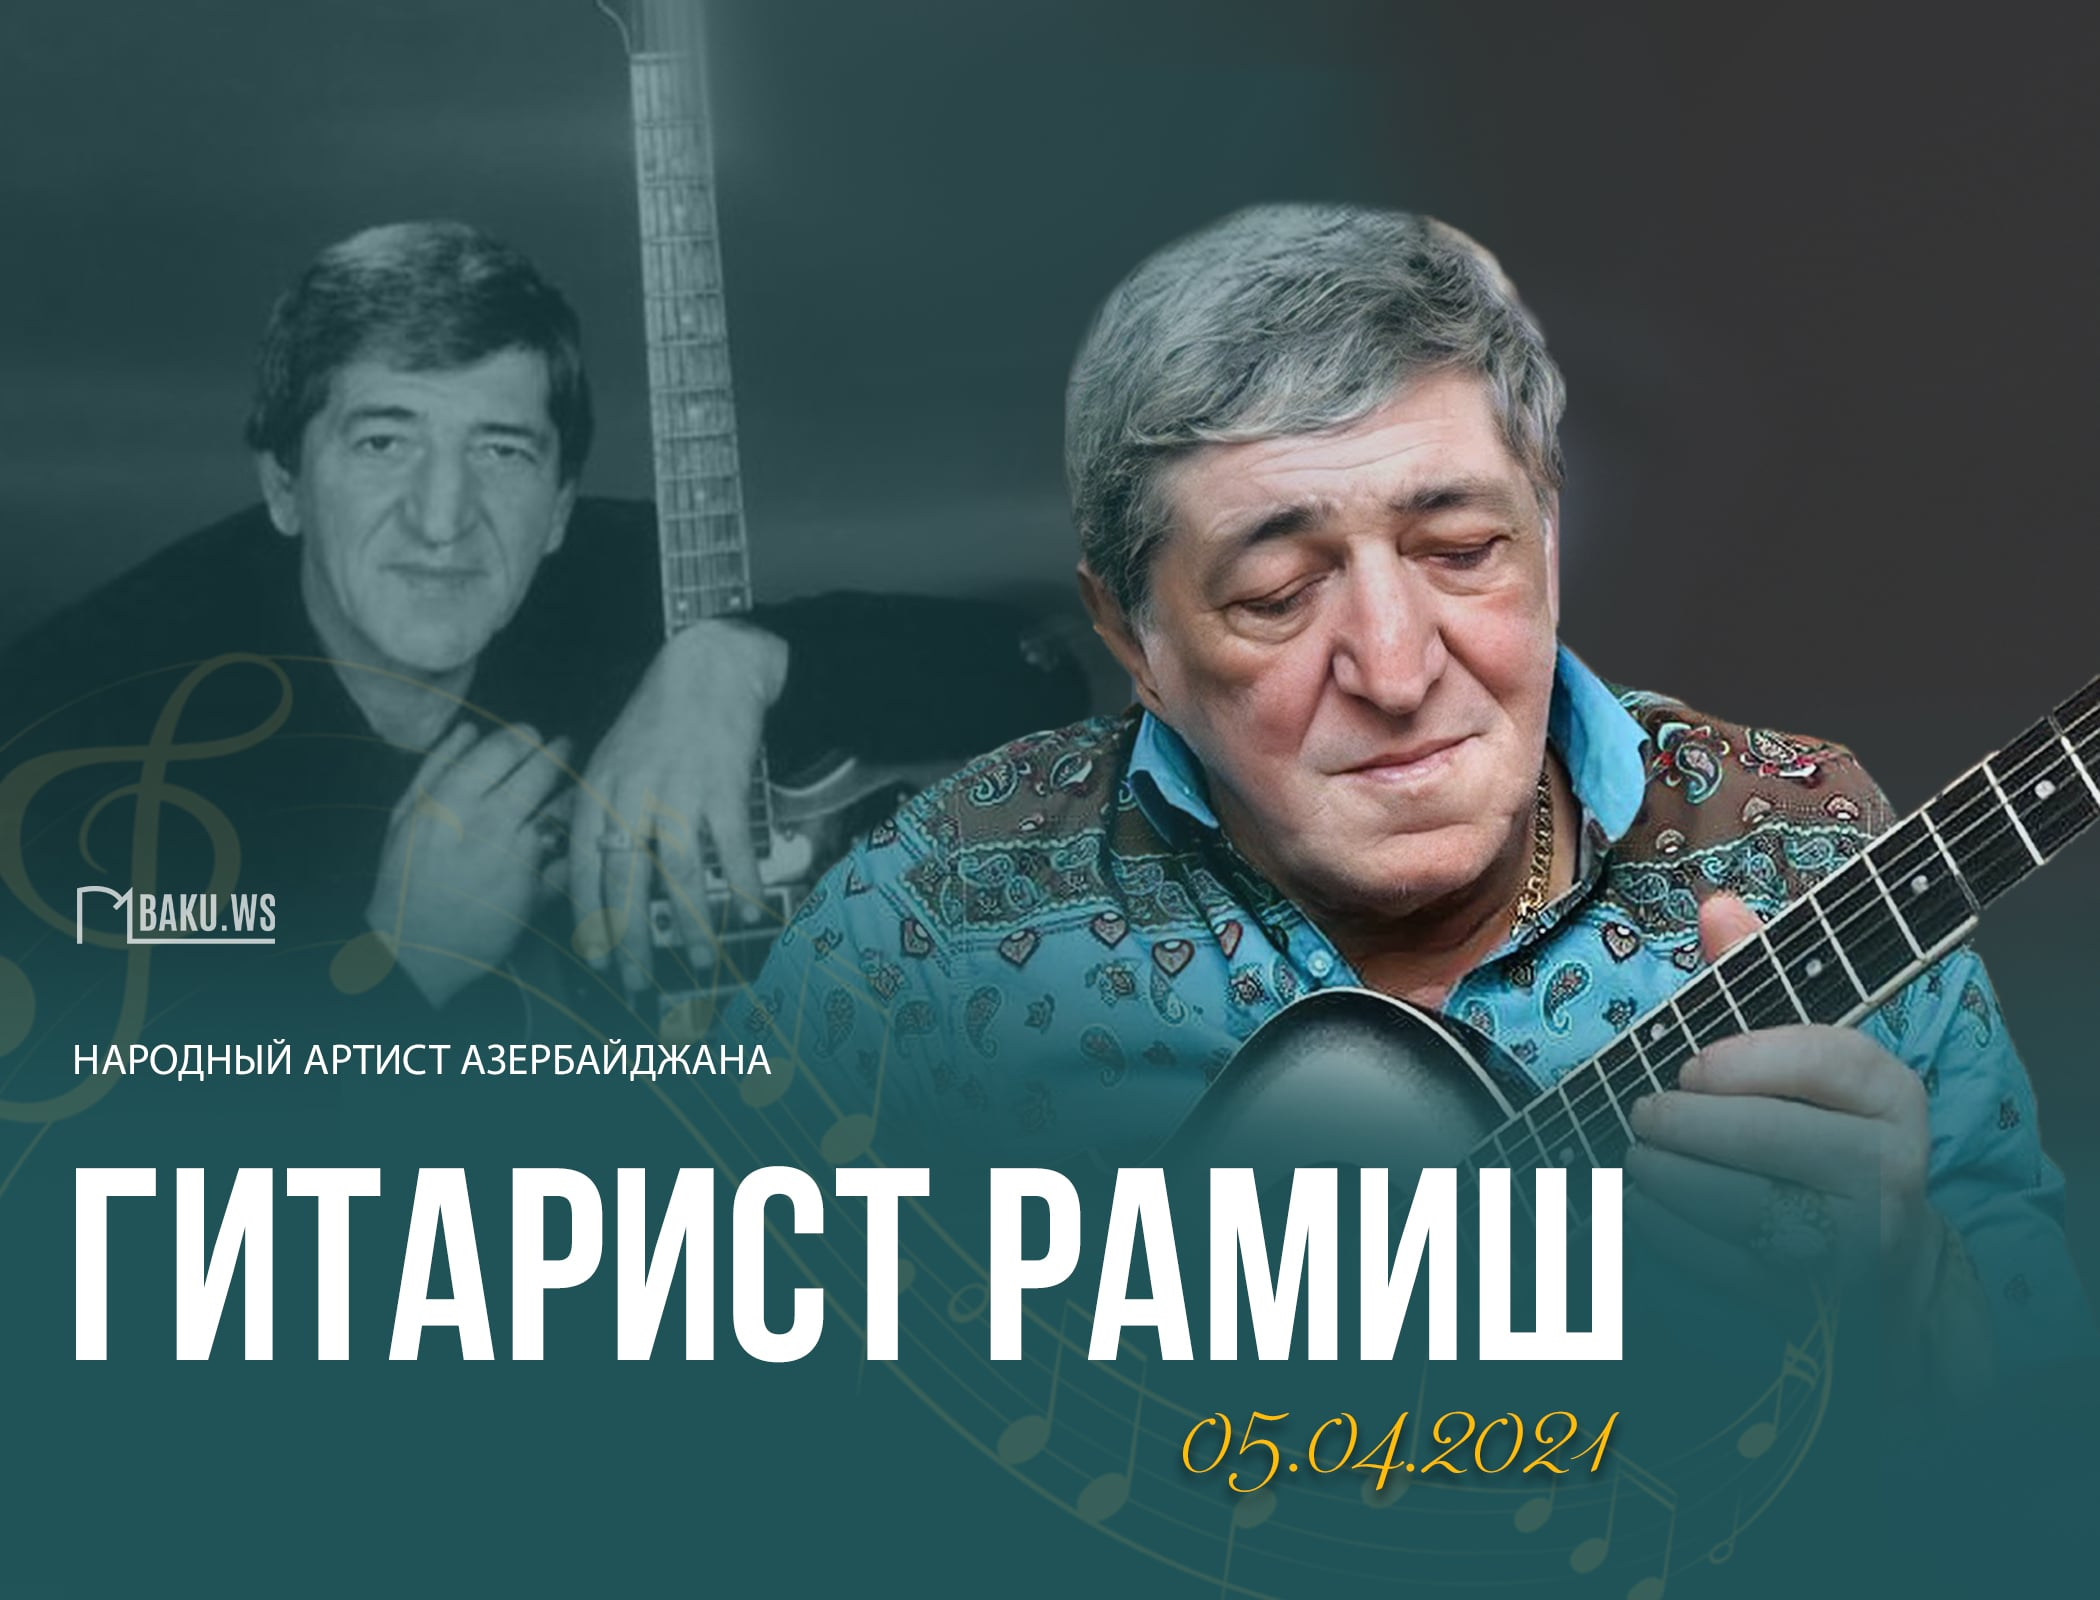 Сегодня день памяти гитариста Рамиша - ФОТО